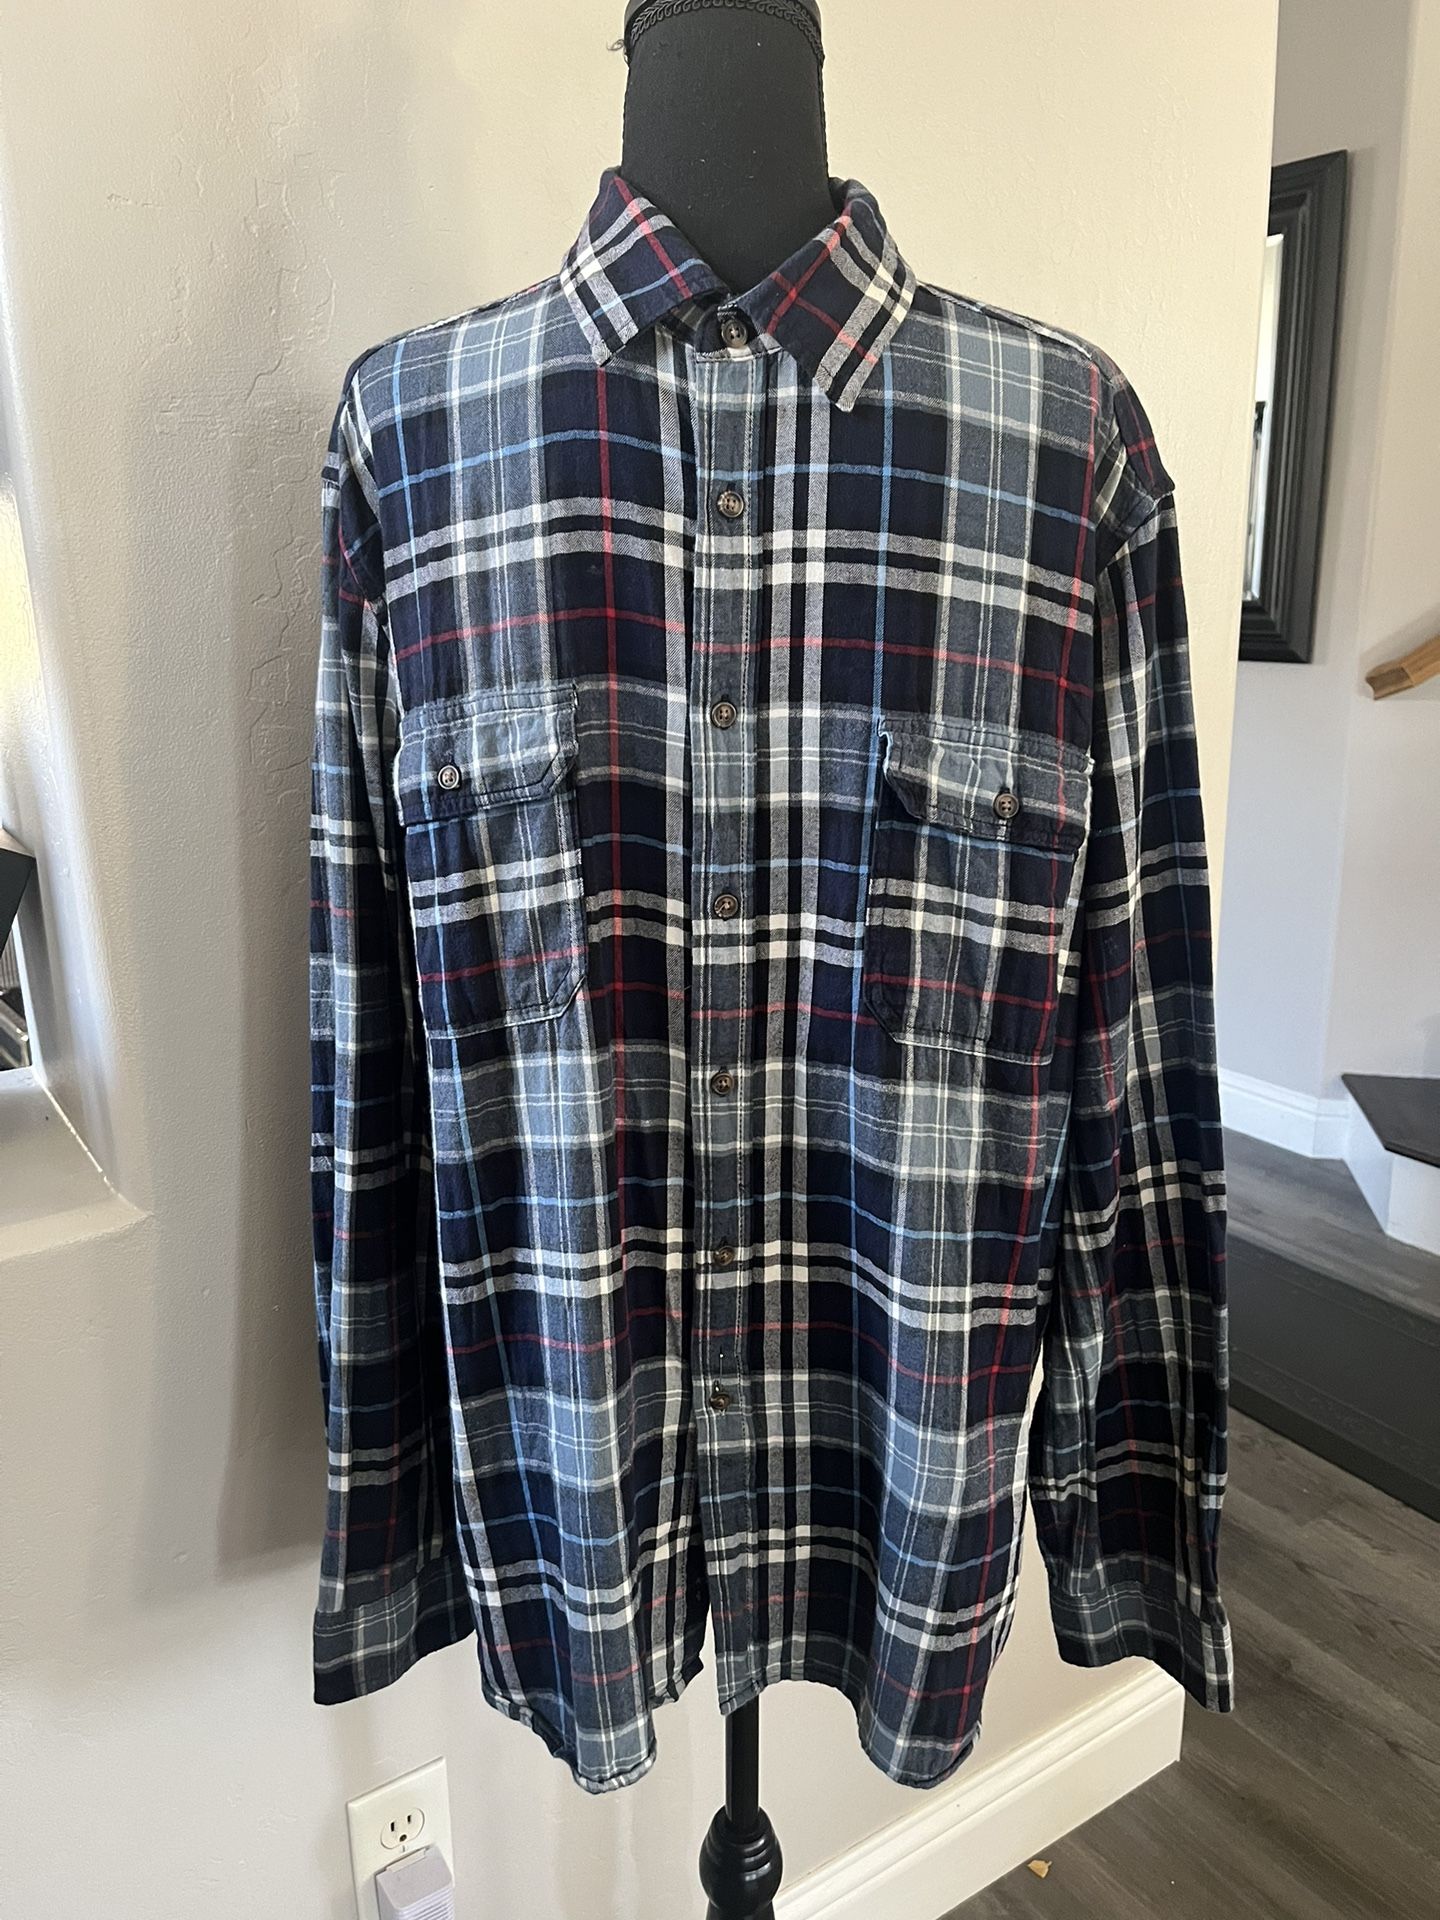 Goodfellow Men’s Long Sleeve Shirt, Plaid Size XL